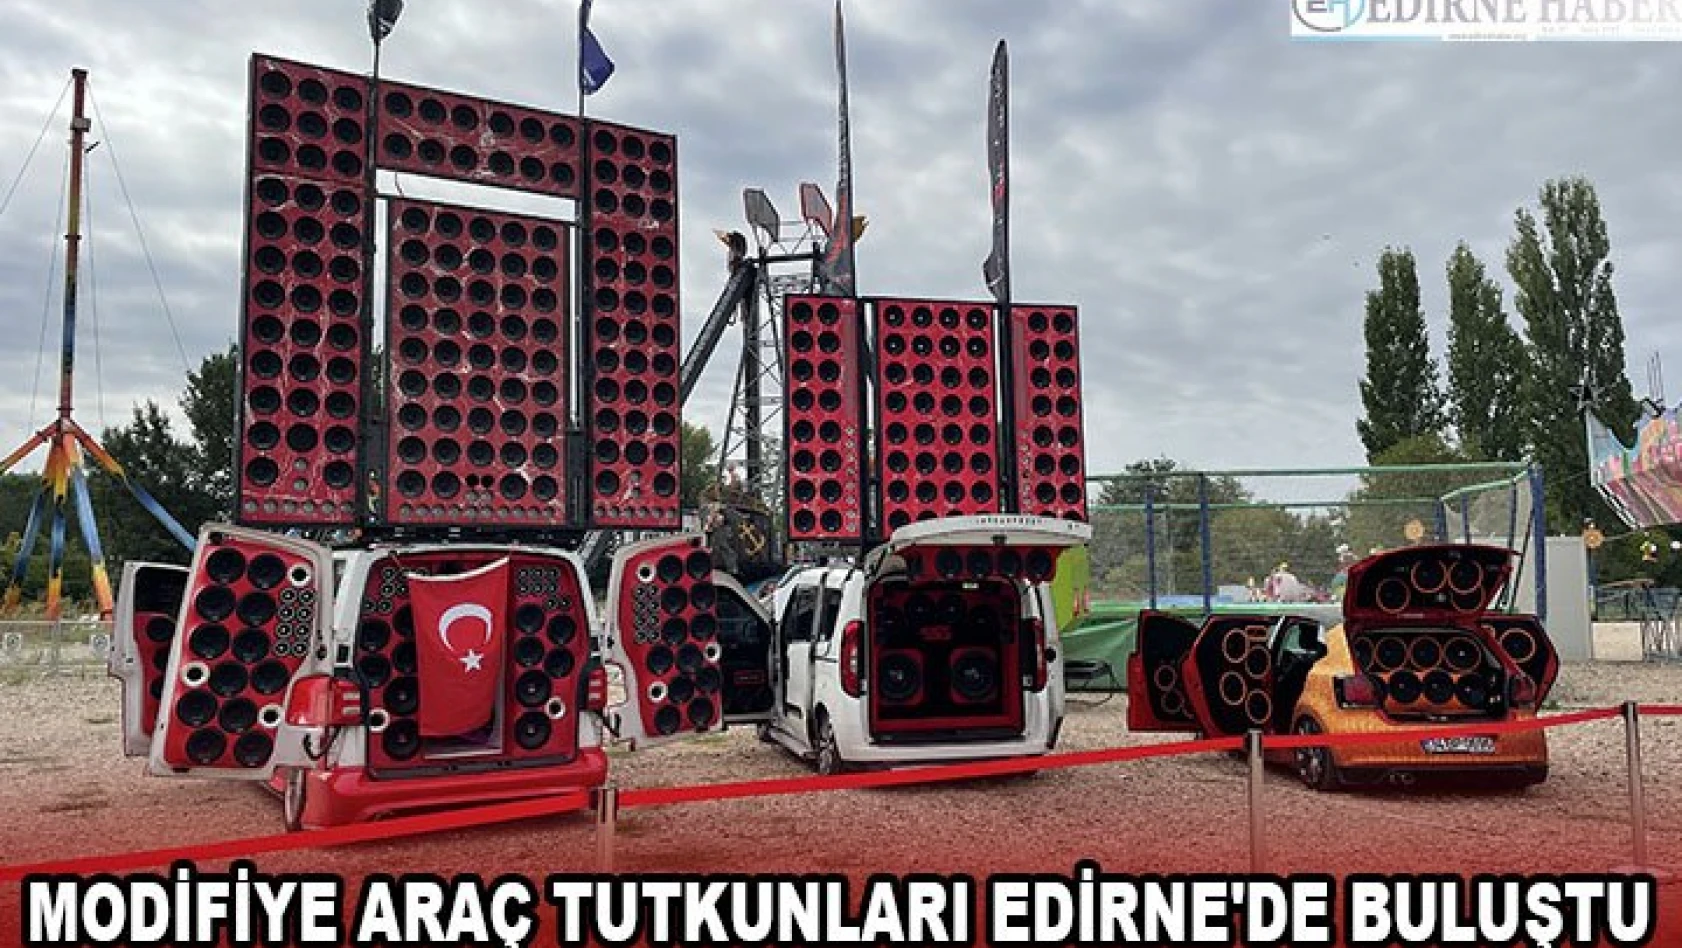 Modifiye araç tutkunları Edirne'de buluştu